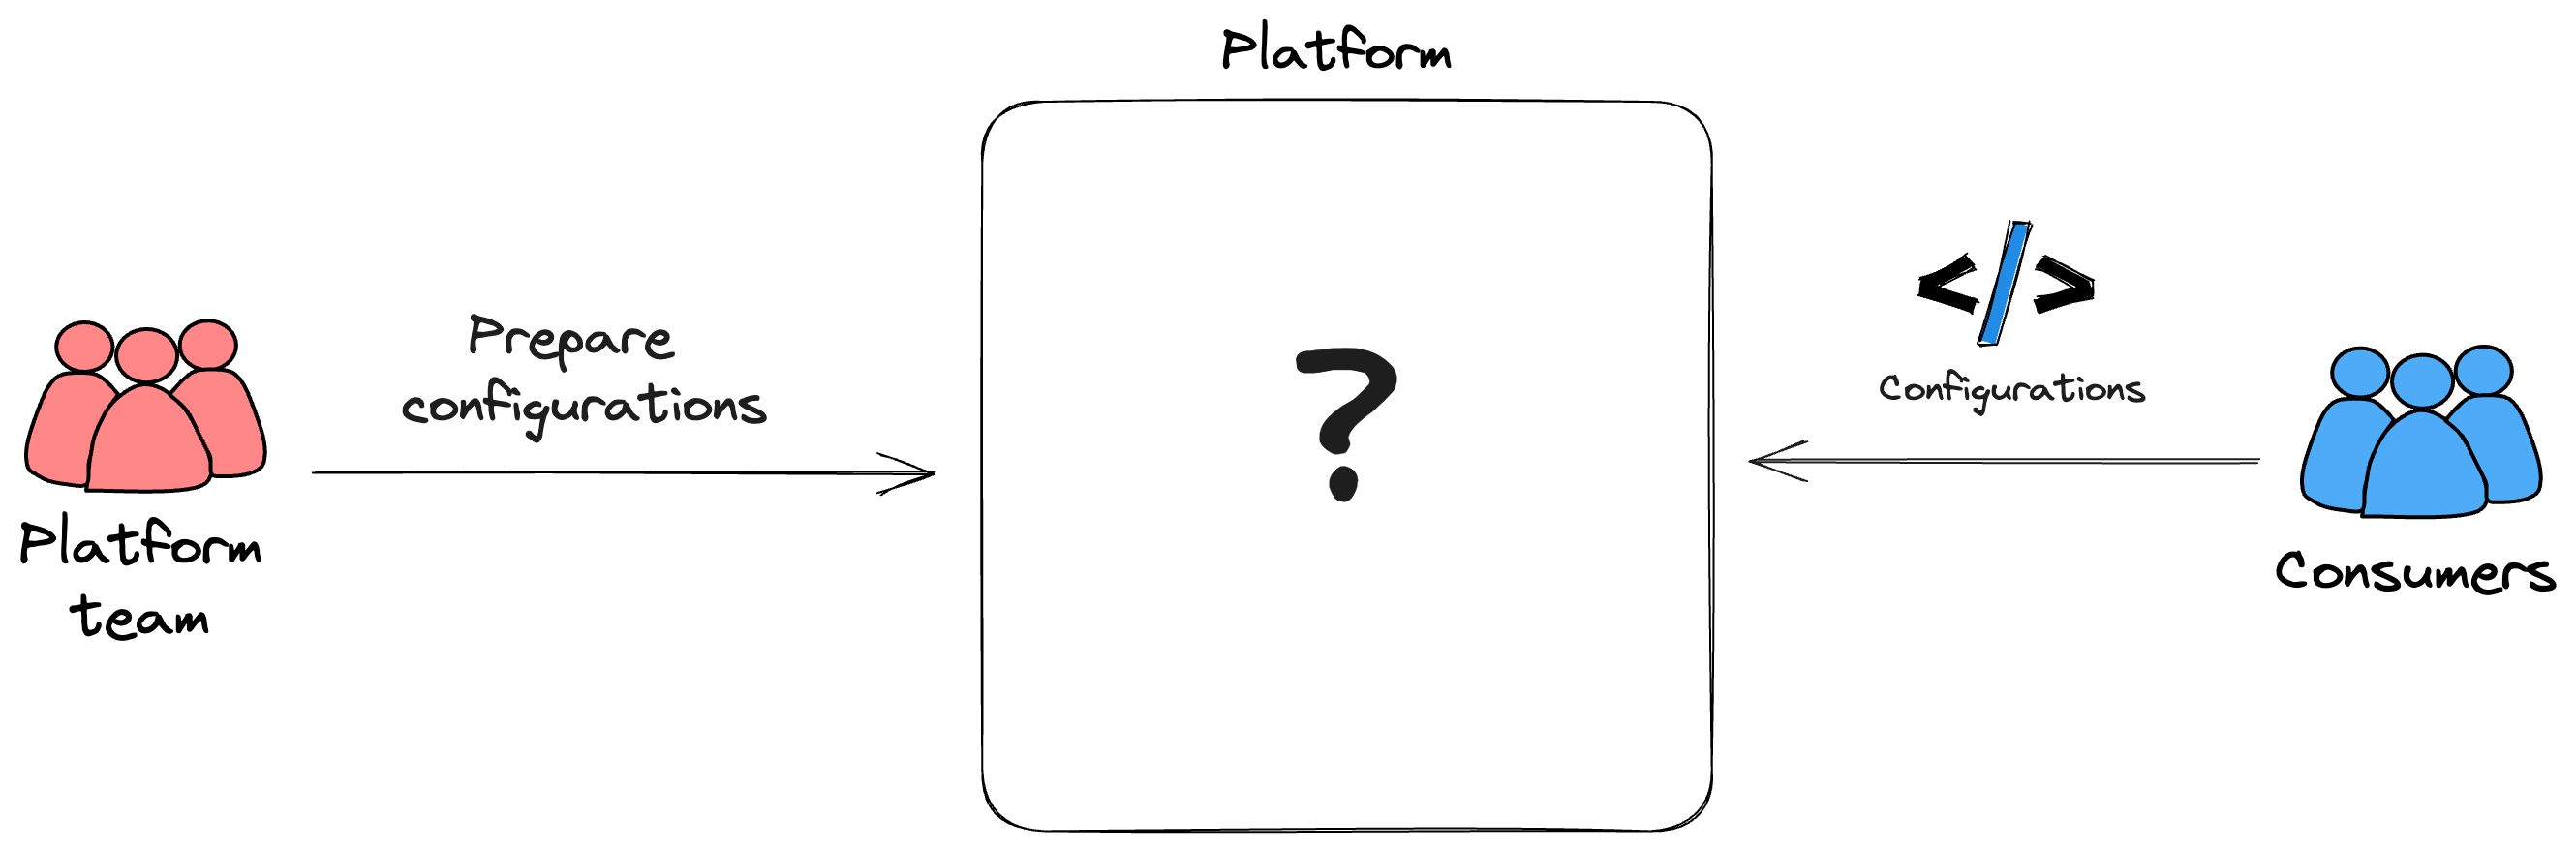 Platform config